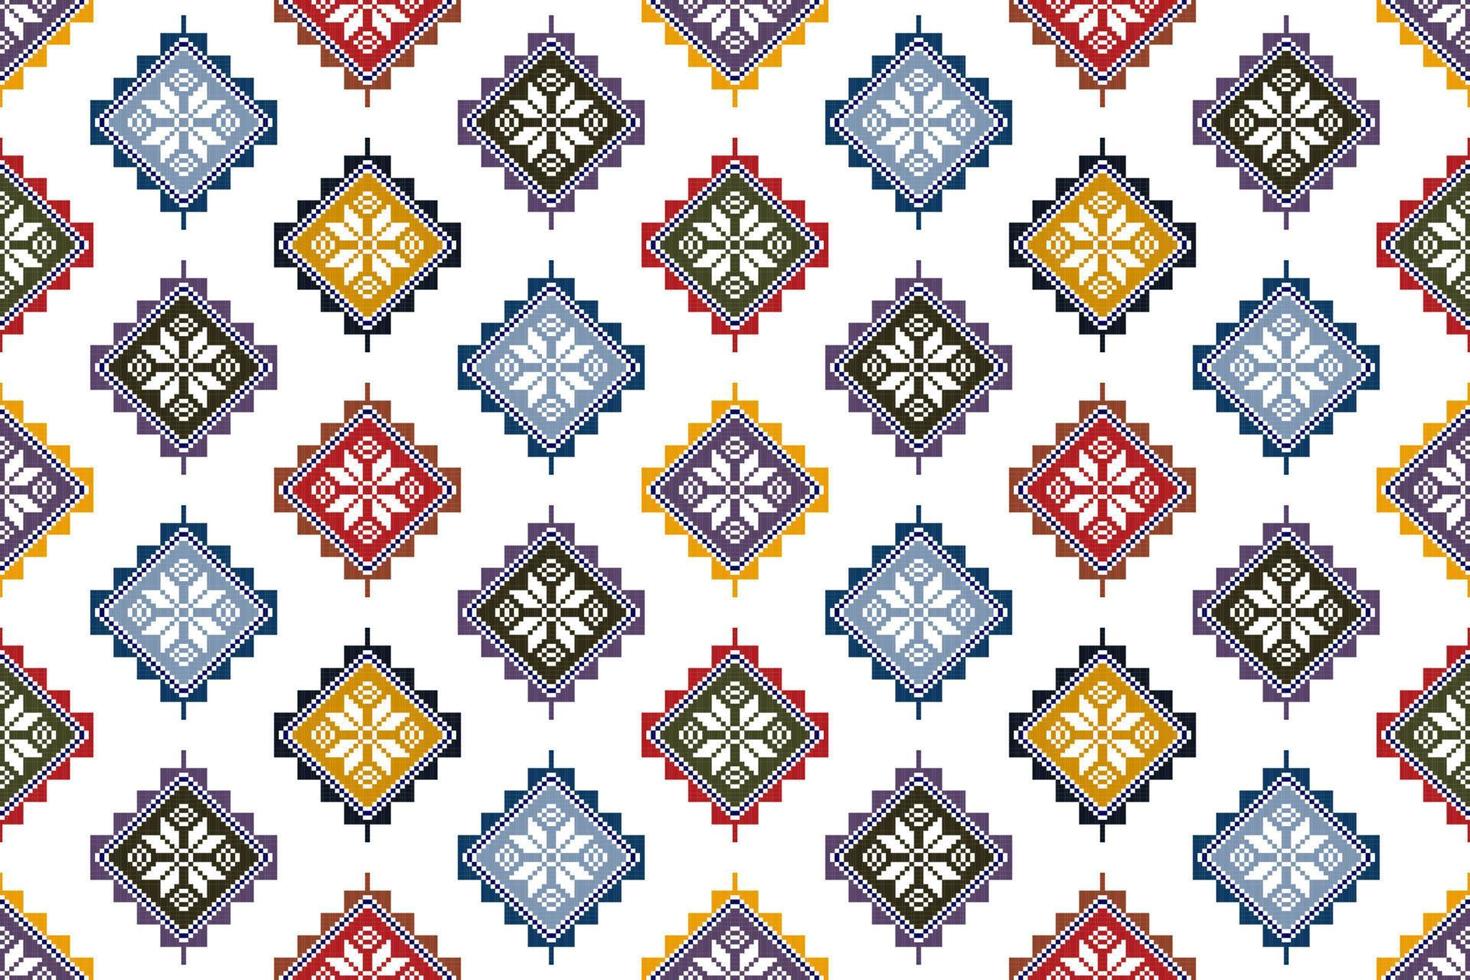 tartreez création de motifs textiles ethniques géométriques abstraits palestiniens. tapis en tissu aztèque ornements de mandala décorations textiles papier peint. tribal boho natif textile sans couture broderie traditionnelle vecteur